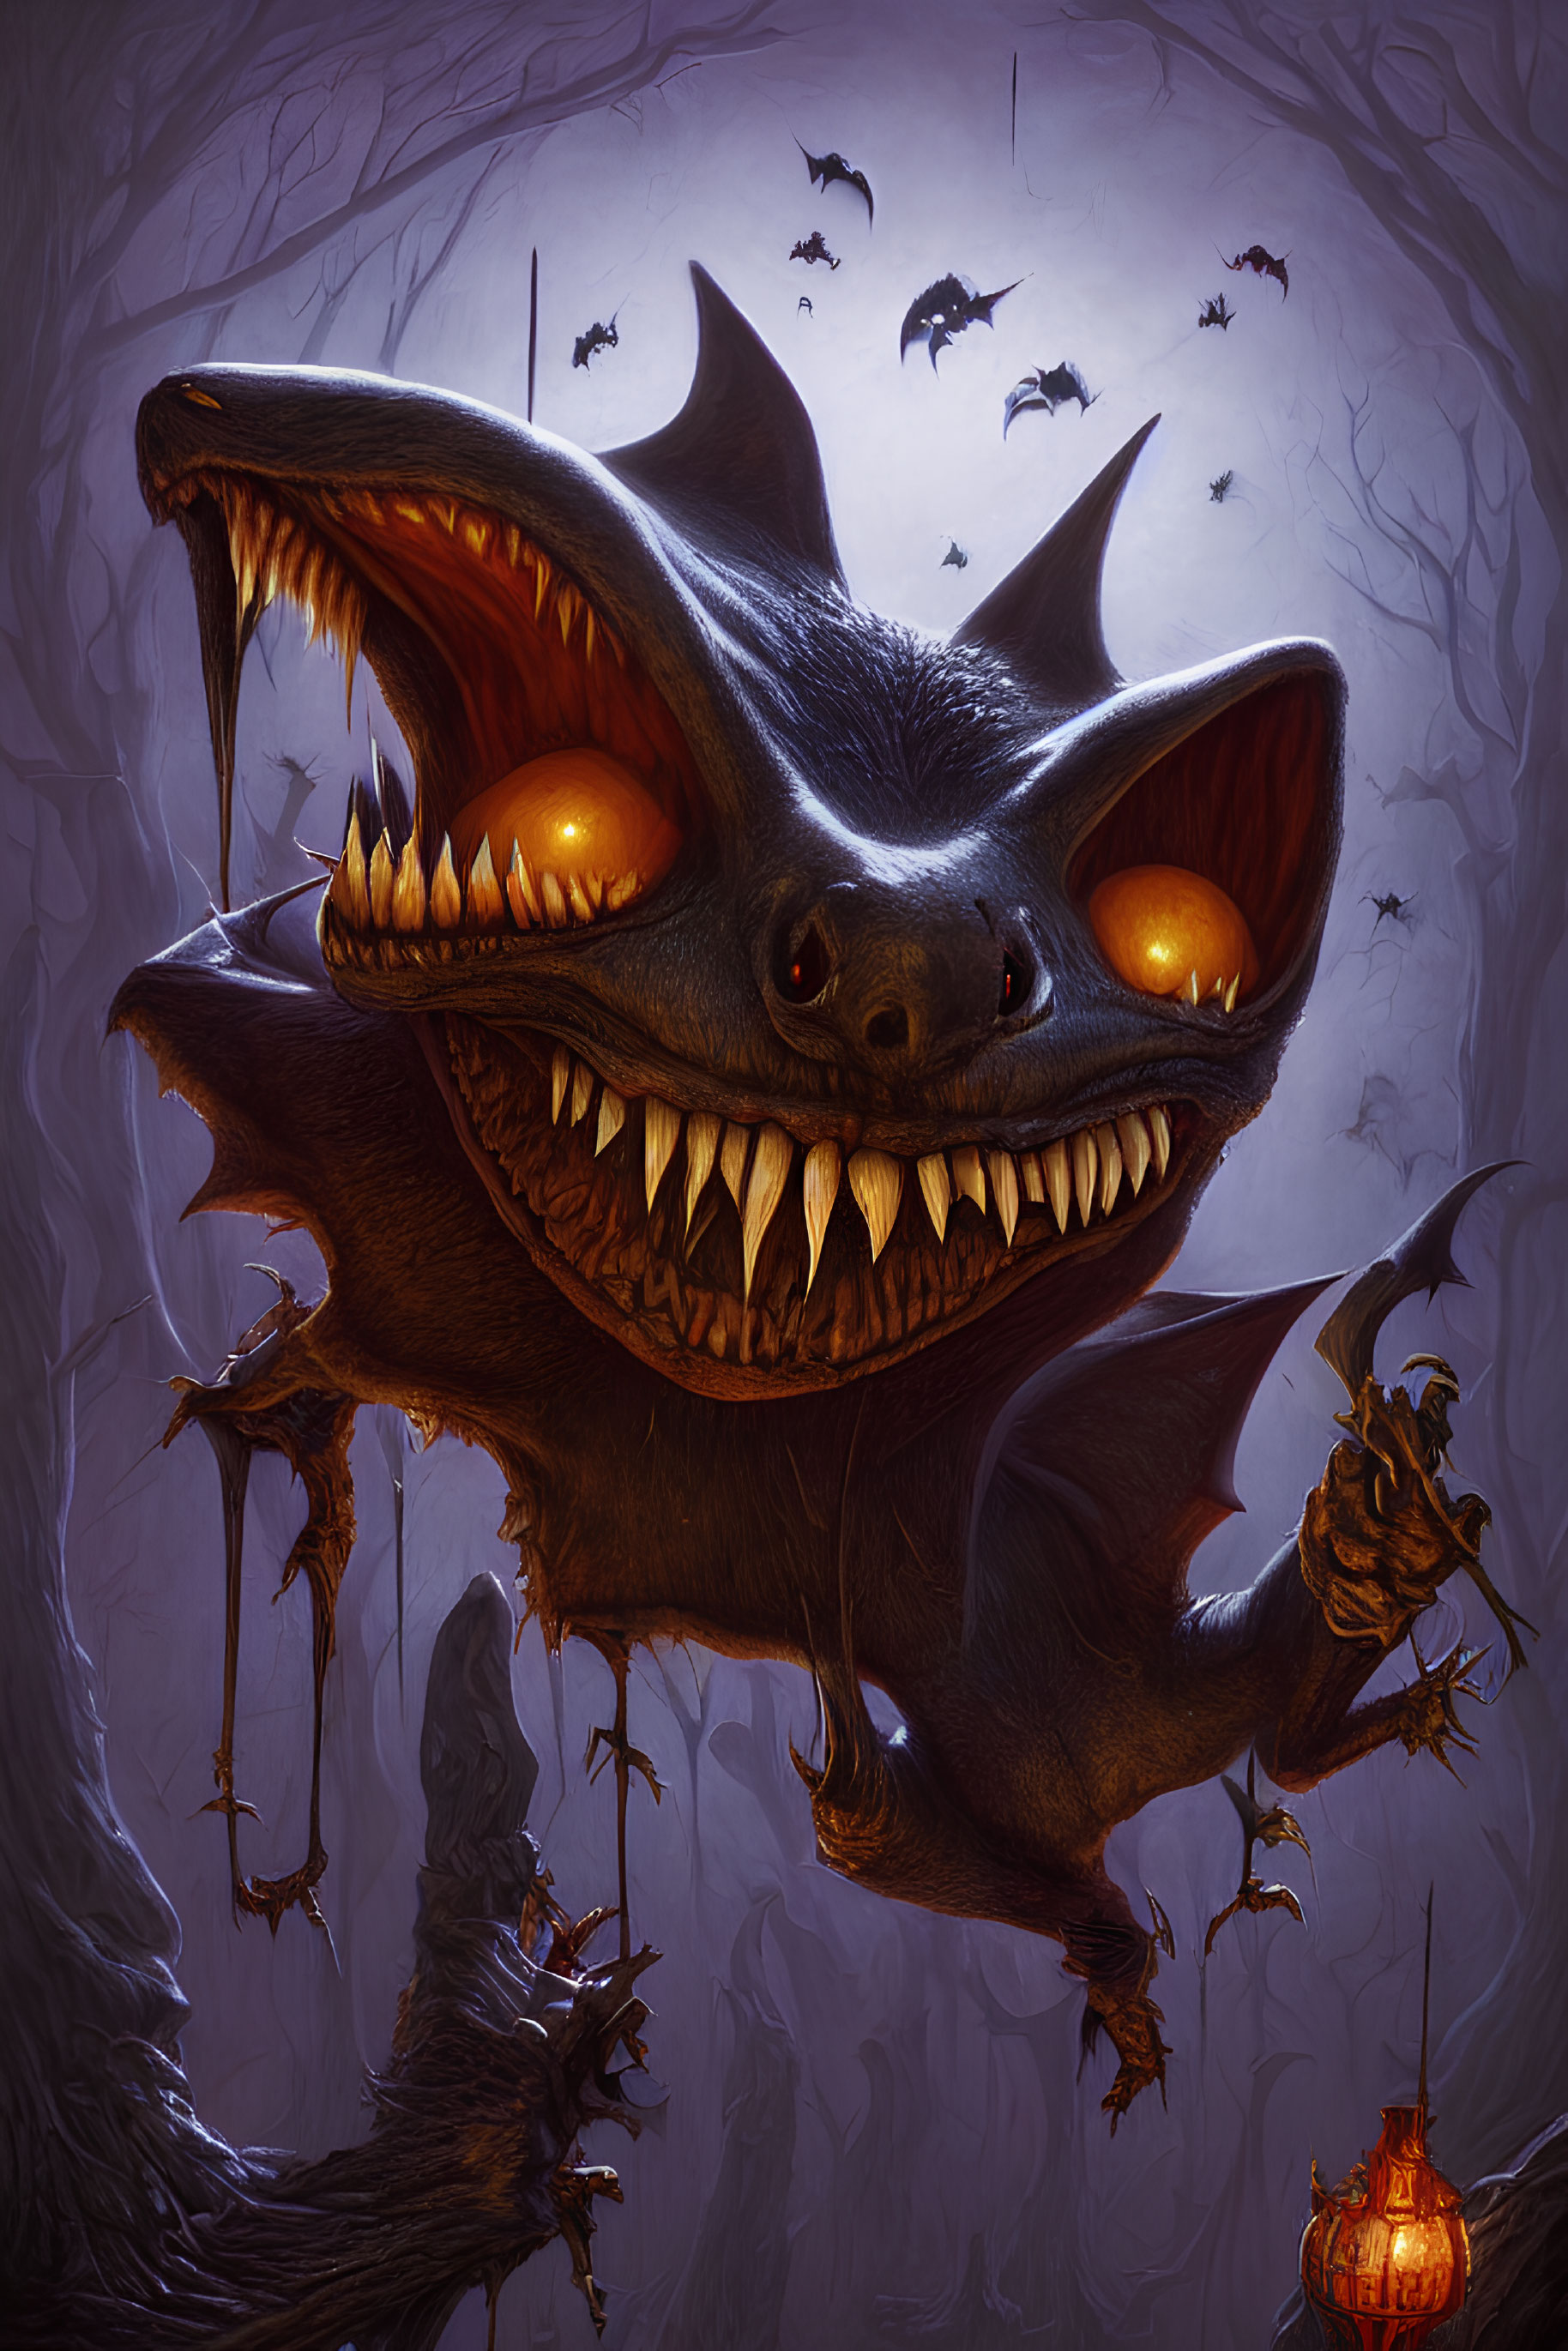 Spooky cartoon bat holding jack-o'-lantern in forest scene